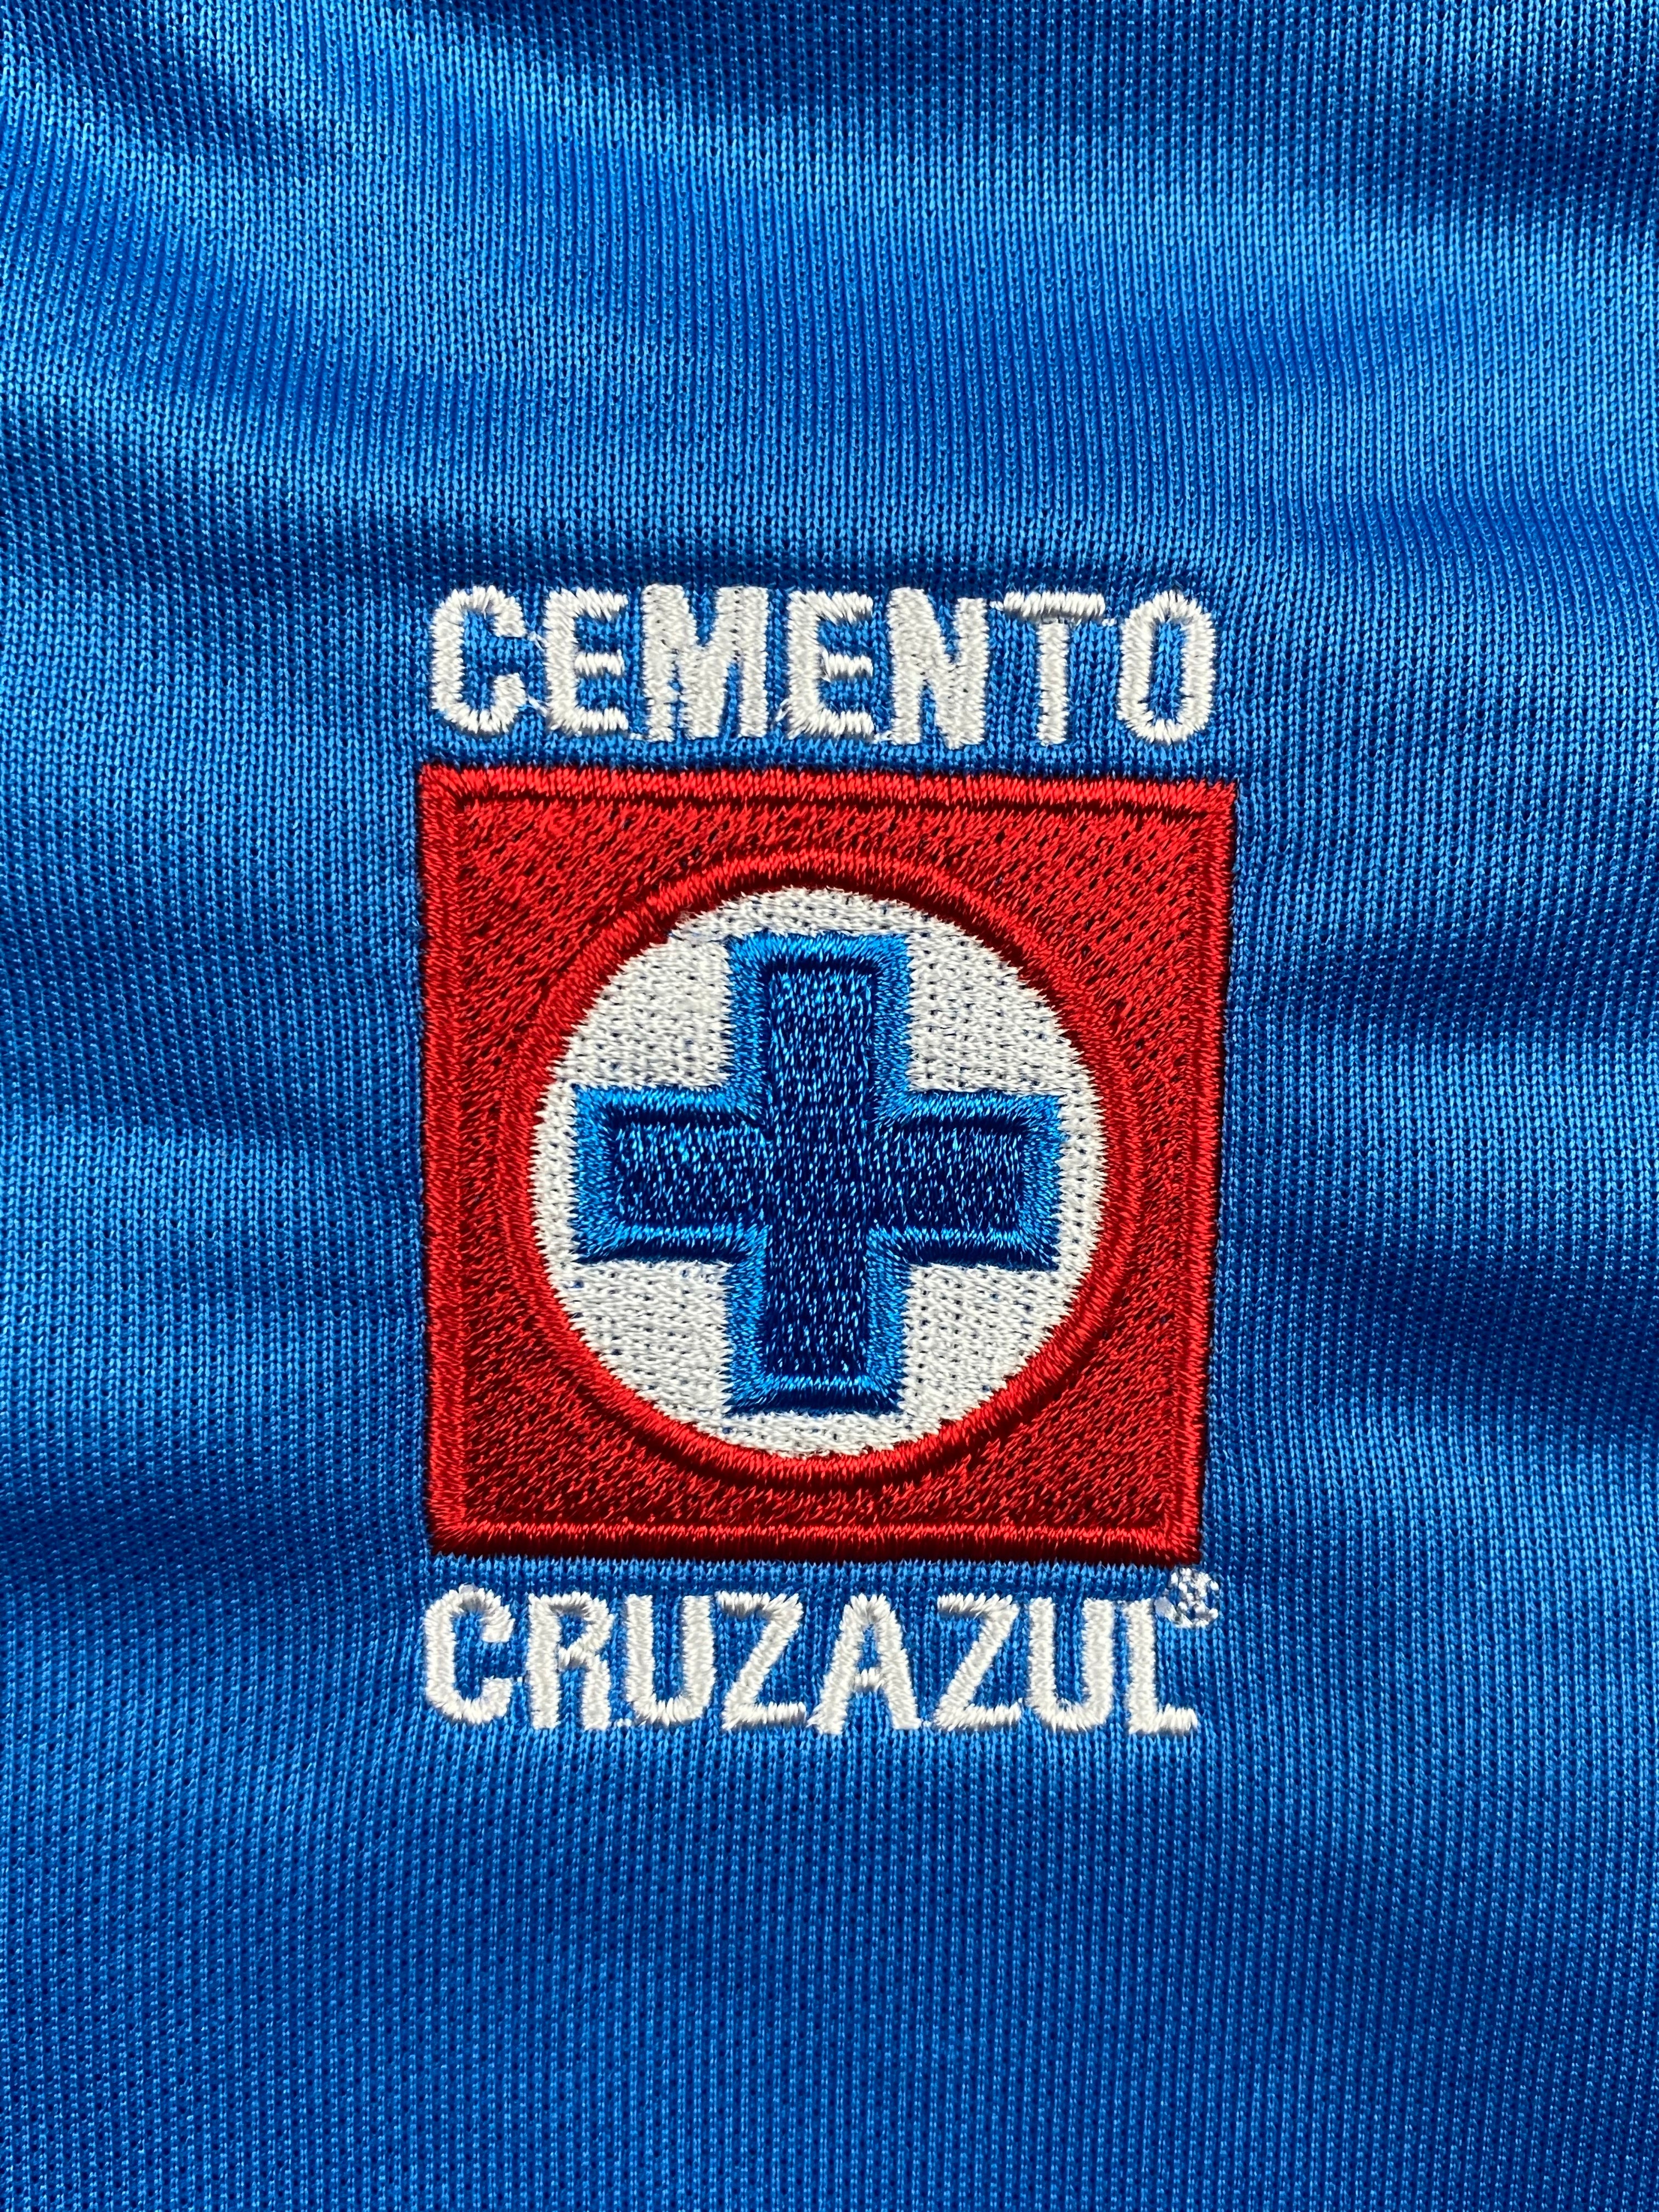 Haut d'entraînement Cruz Azul 2006/07 (XL) BNWT